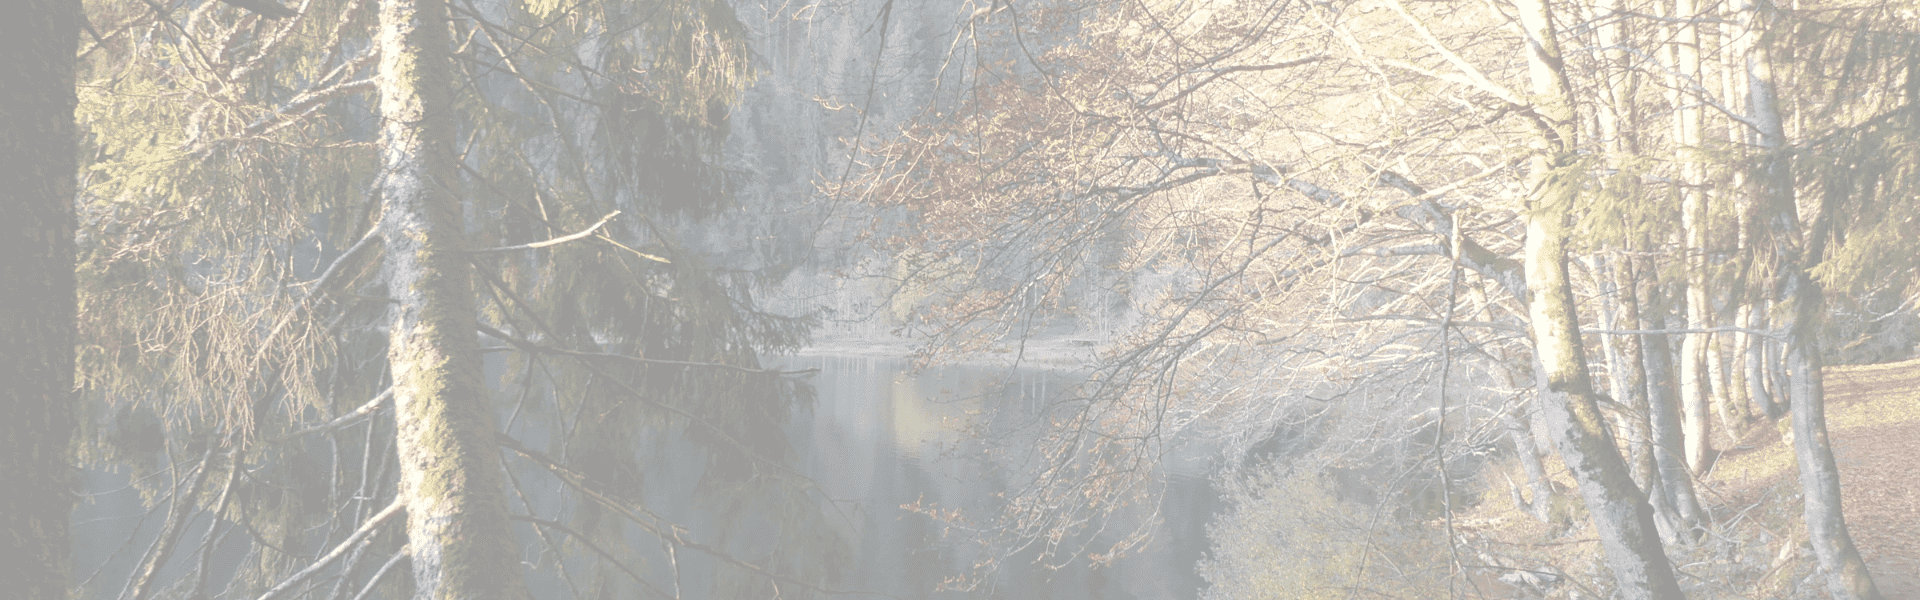 Bild: Feldsee im Morgenlicht von Reinhard Kotter